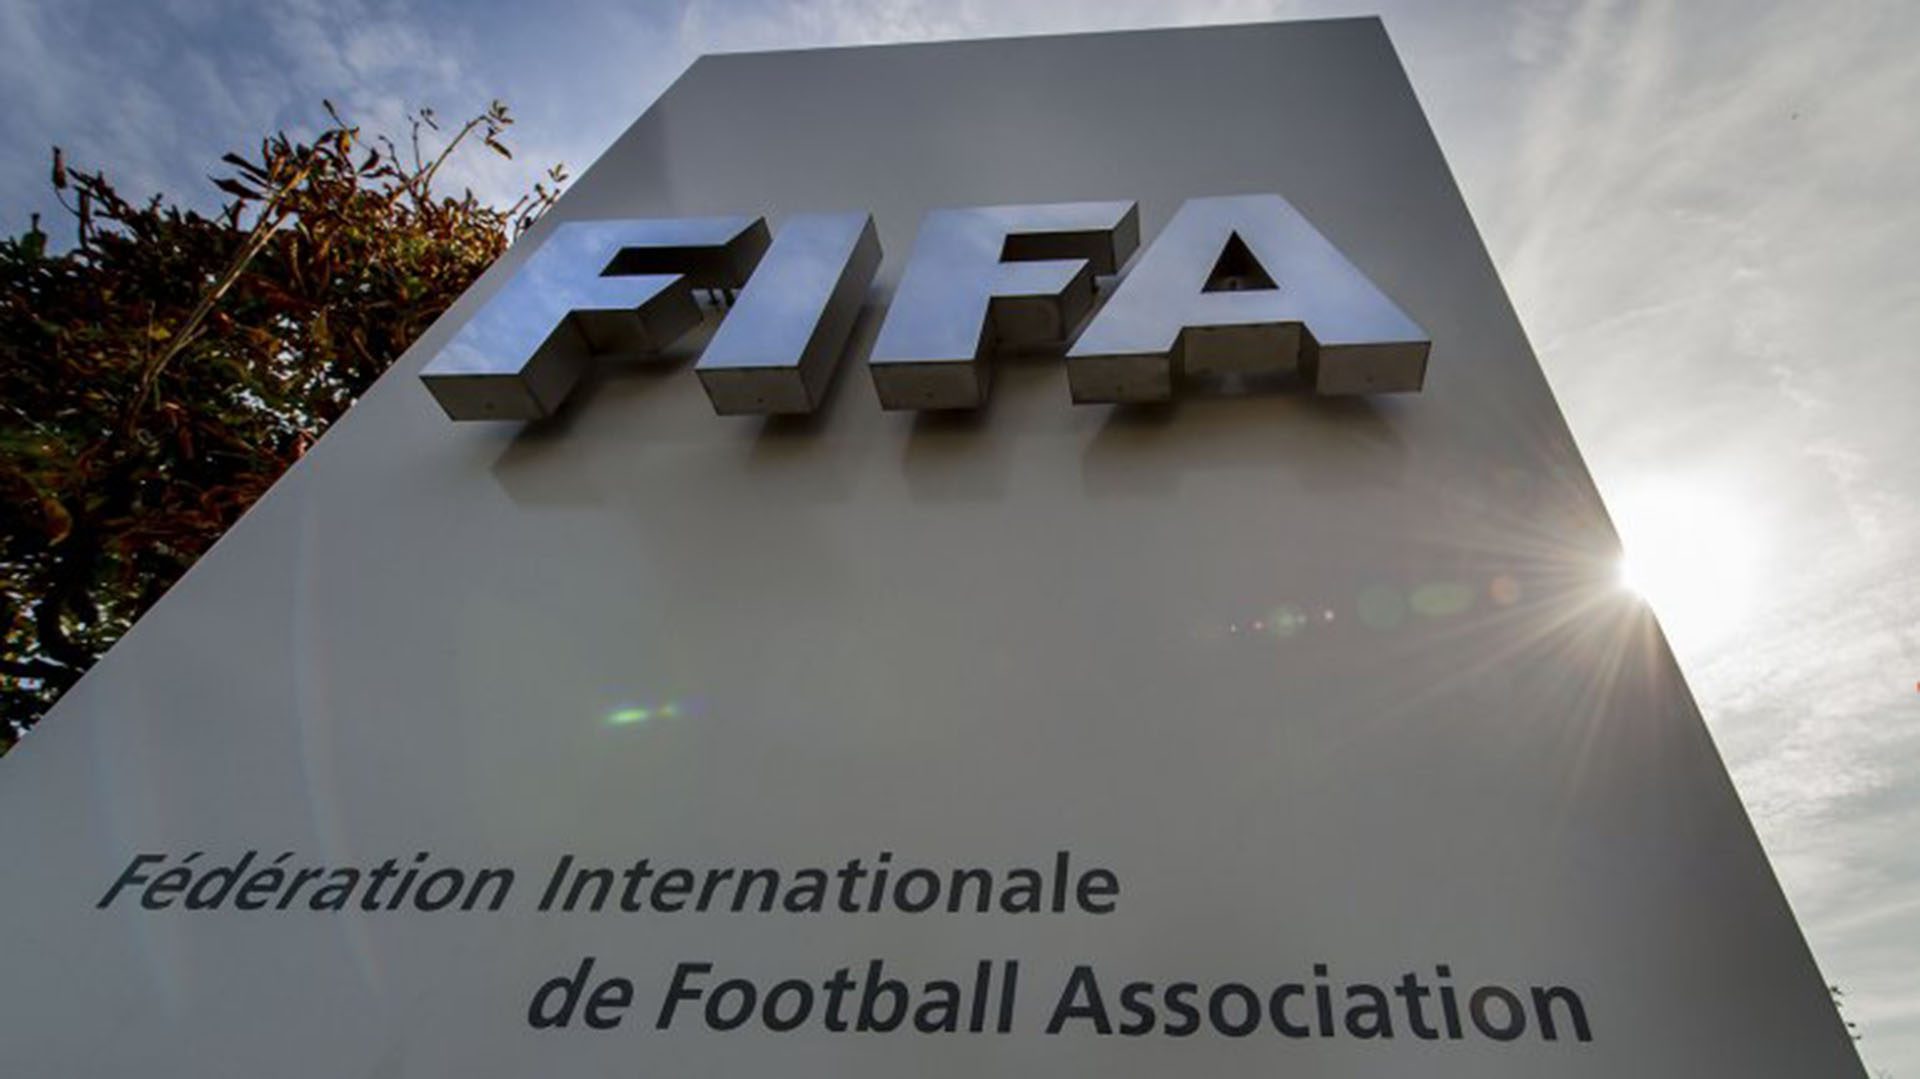  FIFA aún mantiene 13 investigaciones abiertas sobre corrupción y sobornos